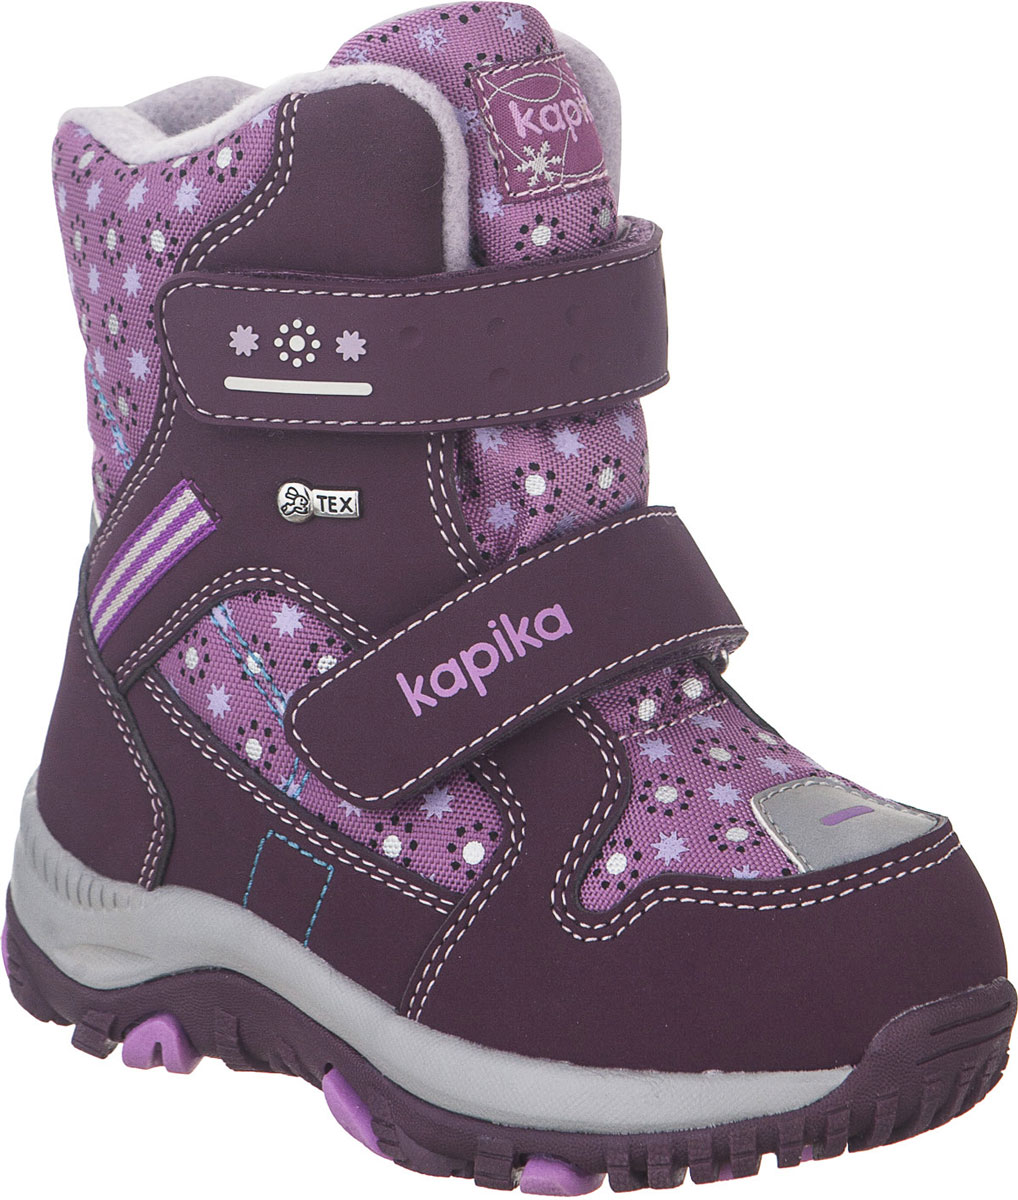 Ботинки для девочки Kapika, цвет: фиолетовый, розовый. 41235-2. Размер 25